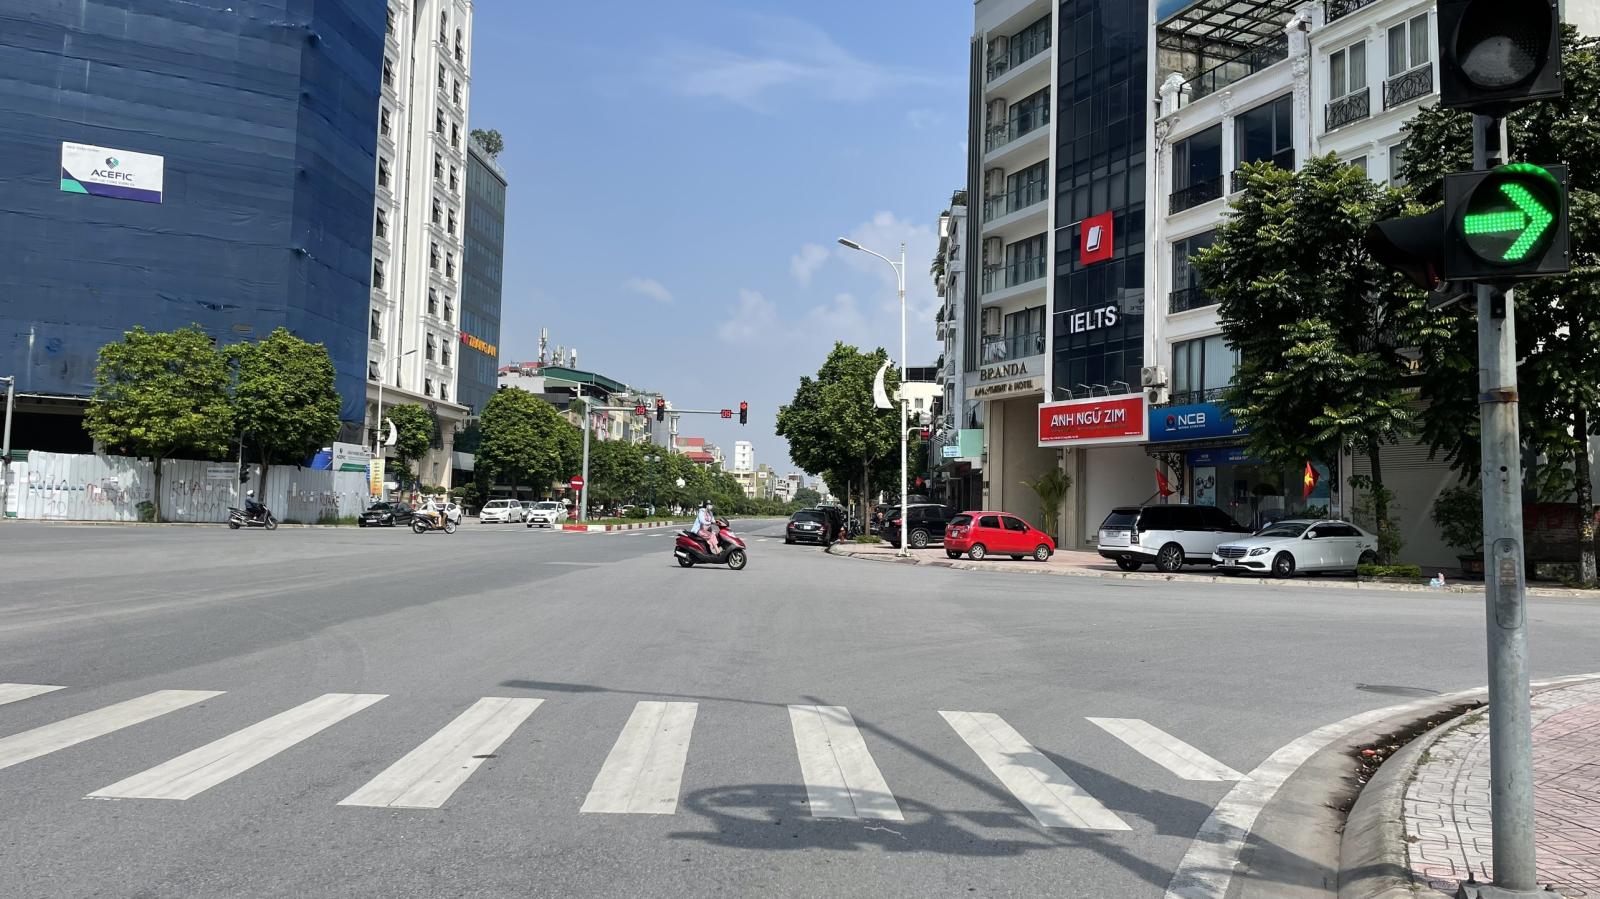 Bán nhà đường Cổ Linh Long Biên,cách mặt phố 30m,2 ô tô tránh,kd,150m,12 tỷ8 13780756